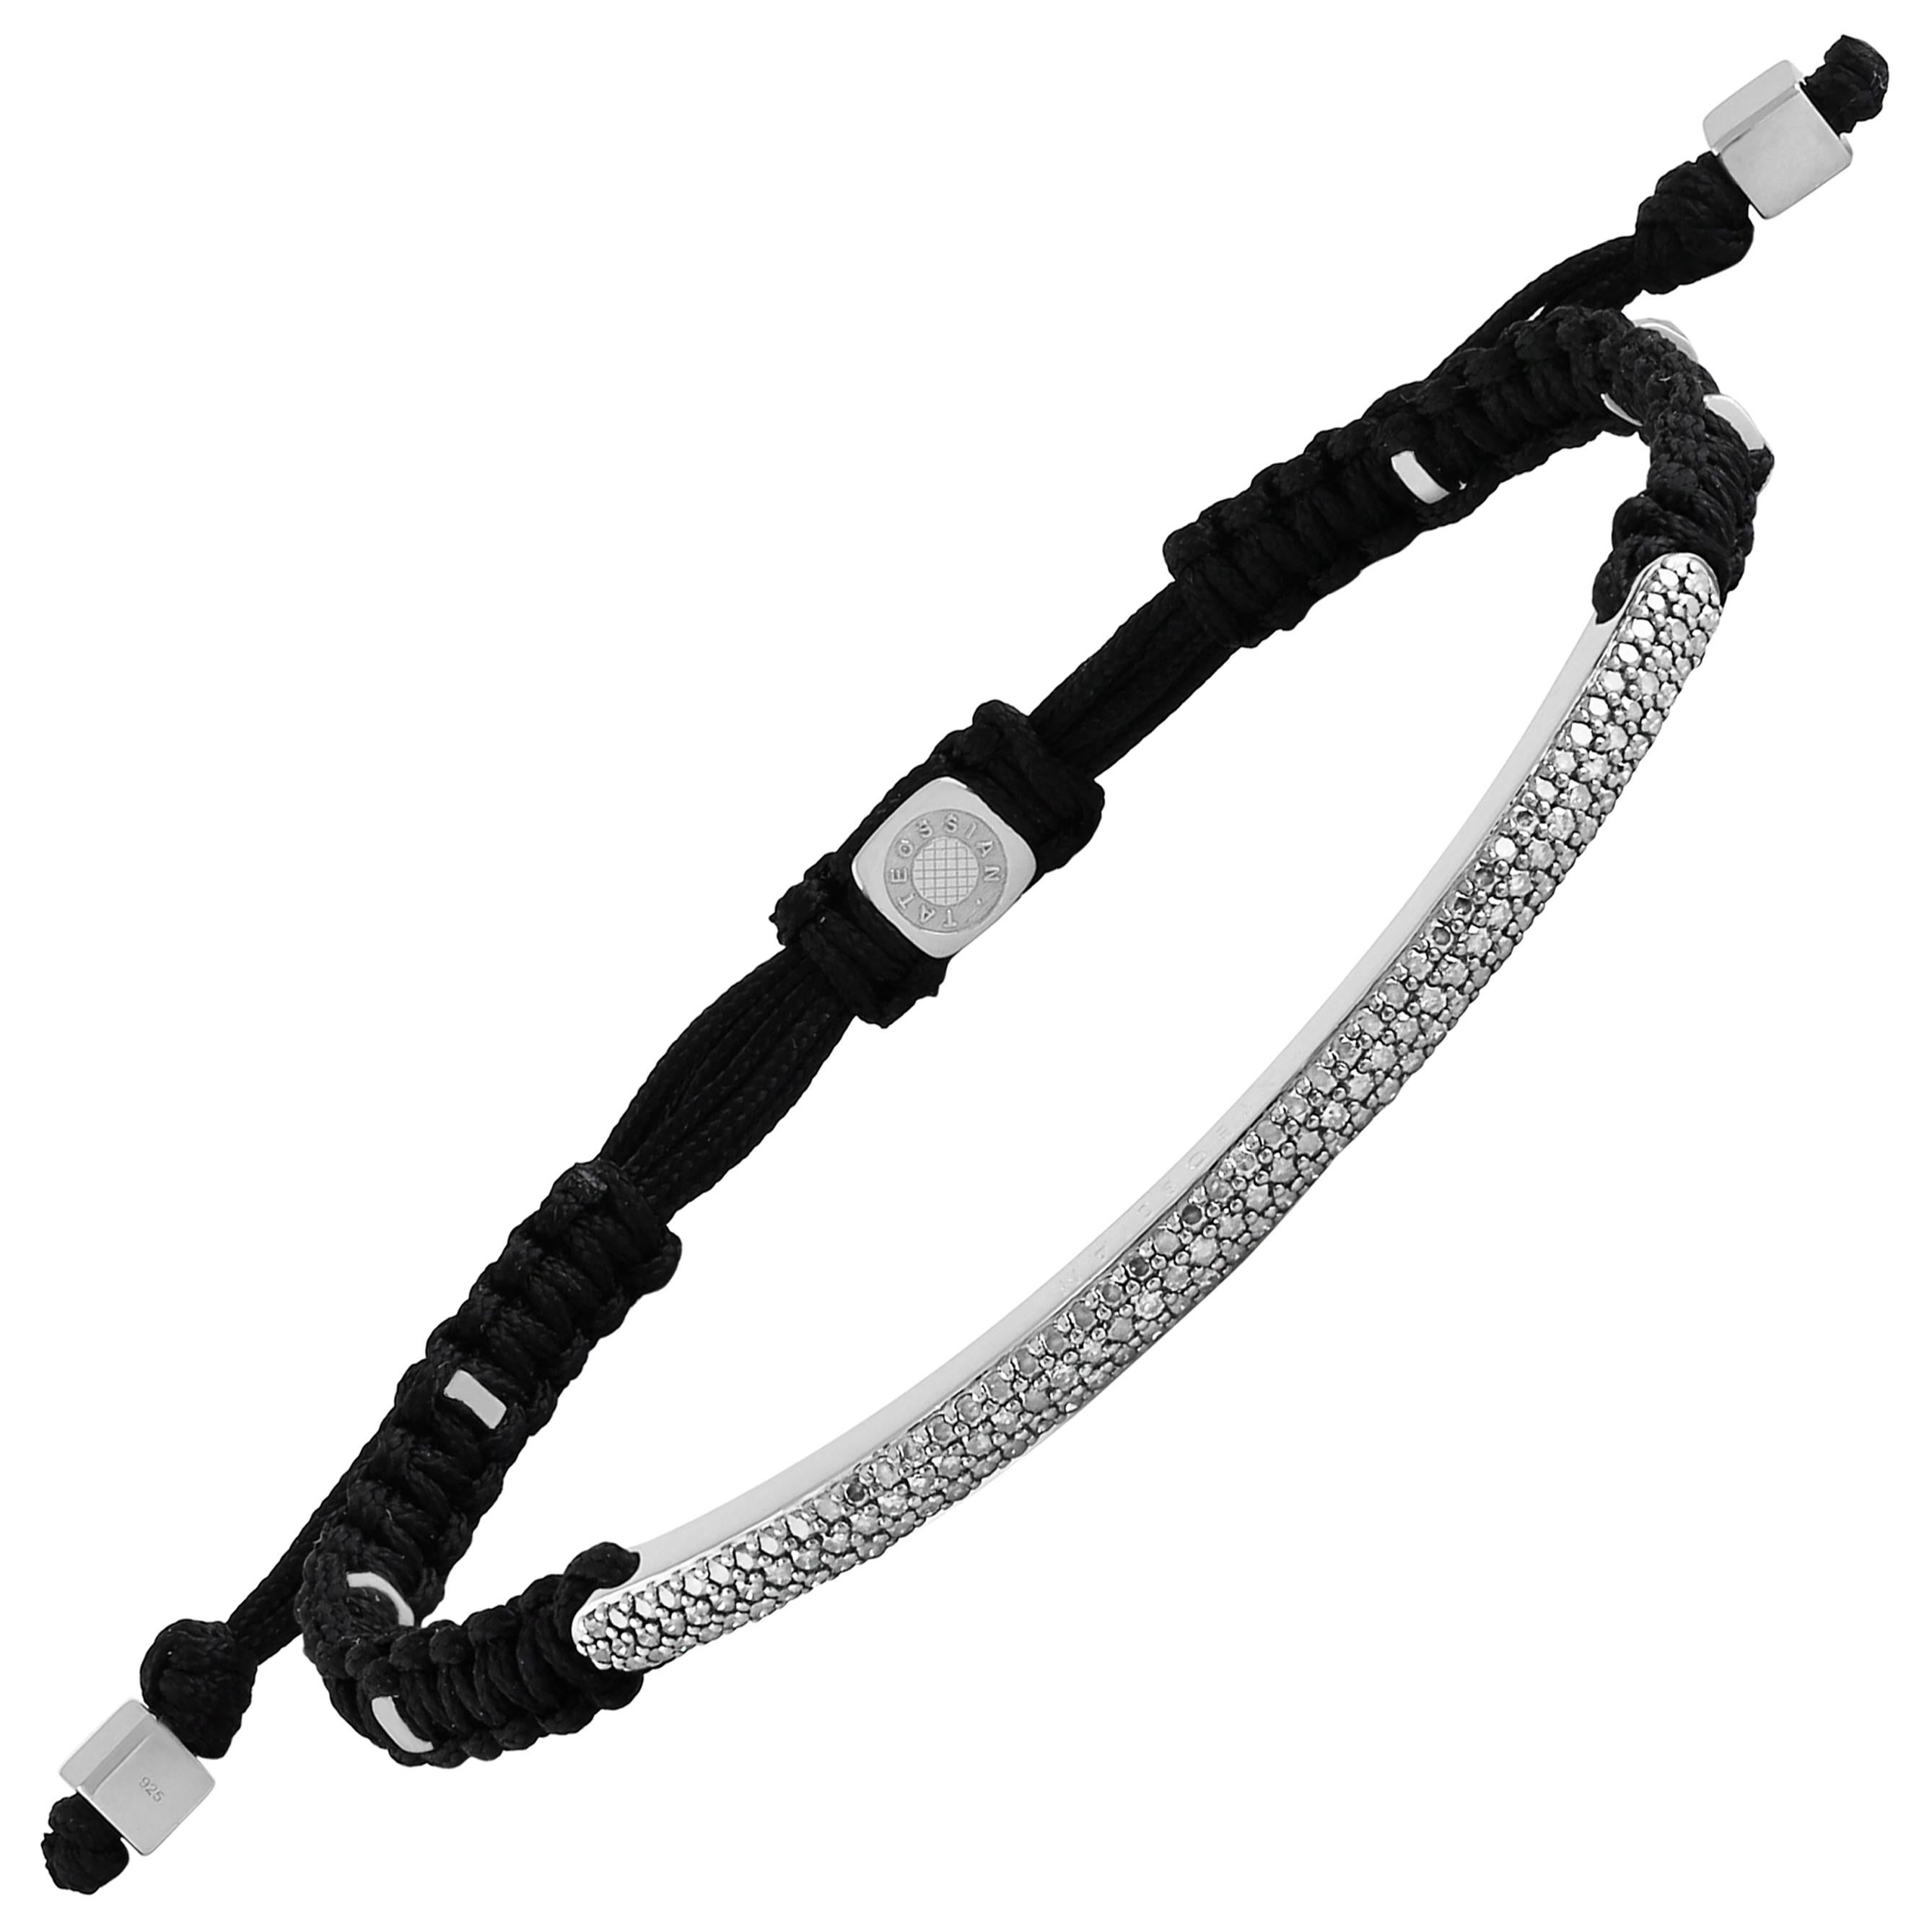 Windsor Baton Macrame Bracelet In Black With White Diamond - XS-S (15-16cm) 